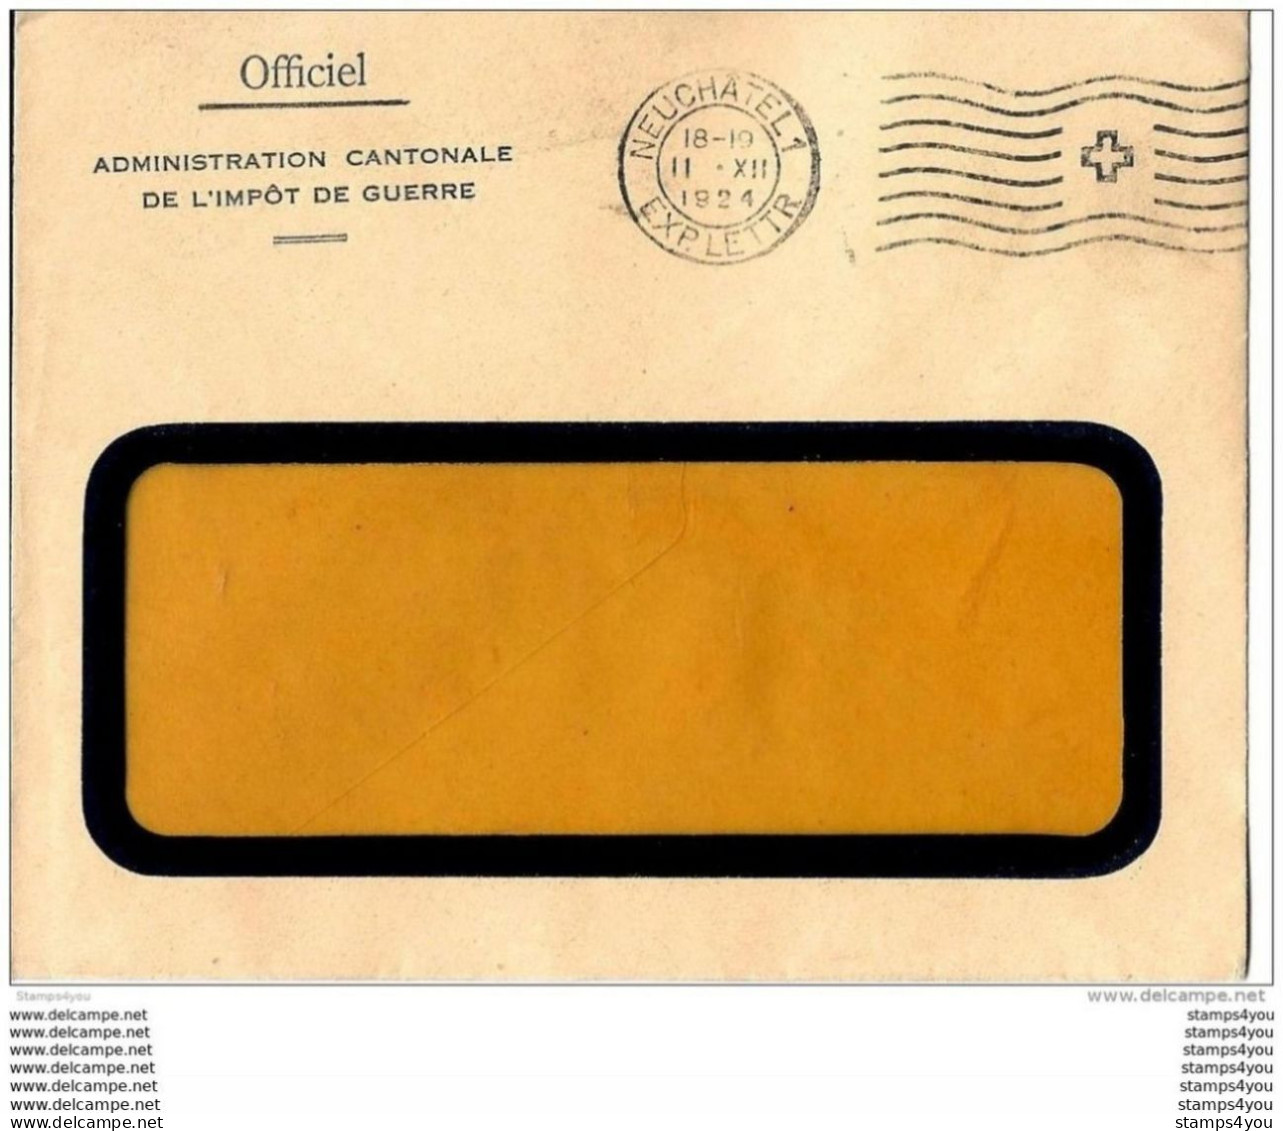 75 - 78 - Enveloppe  Officielle  Administration Cantonale De L'impôt De Guerre - Oblit Mécanique Neuchâtel 1924 - Marcophilie